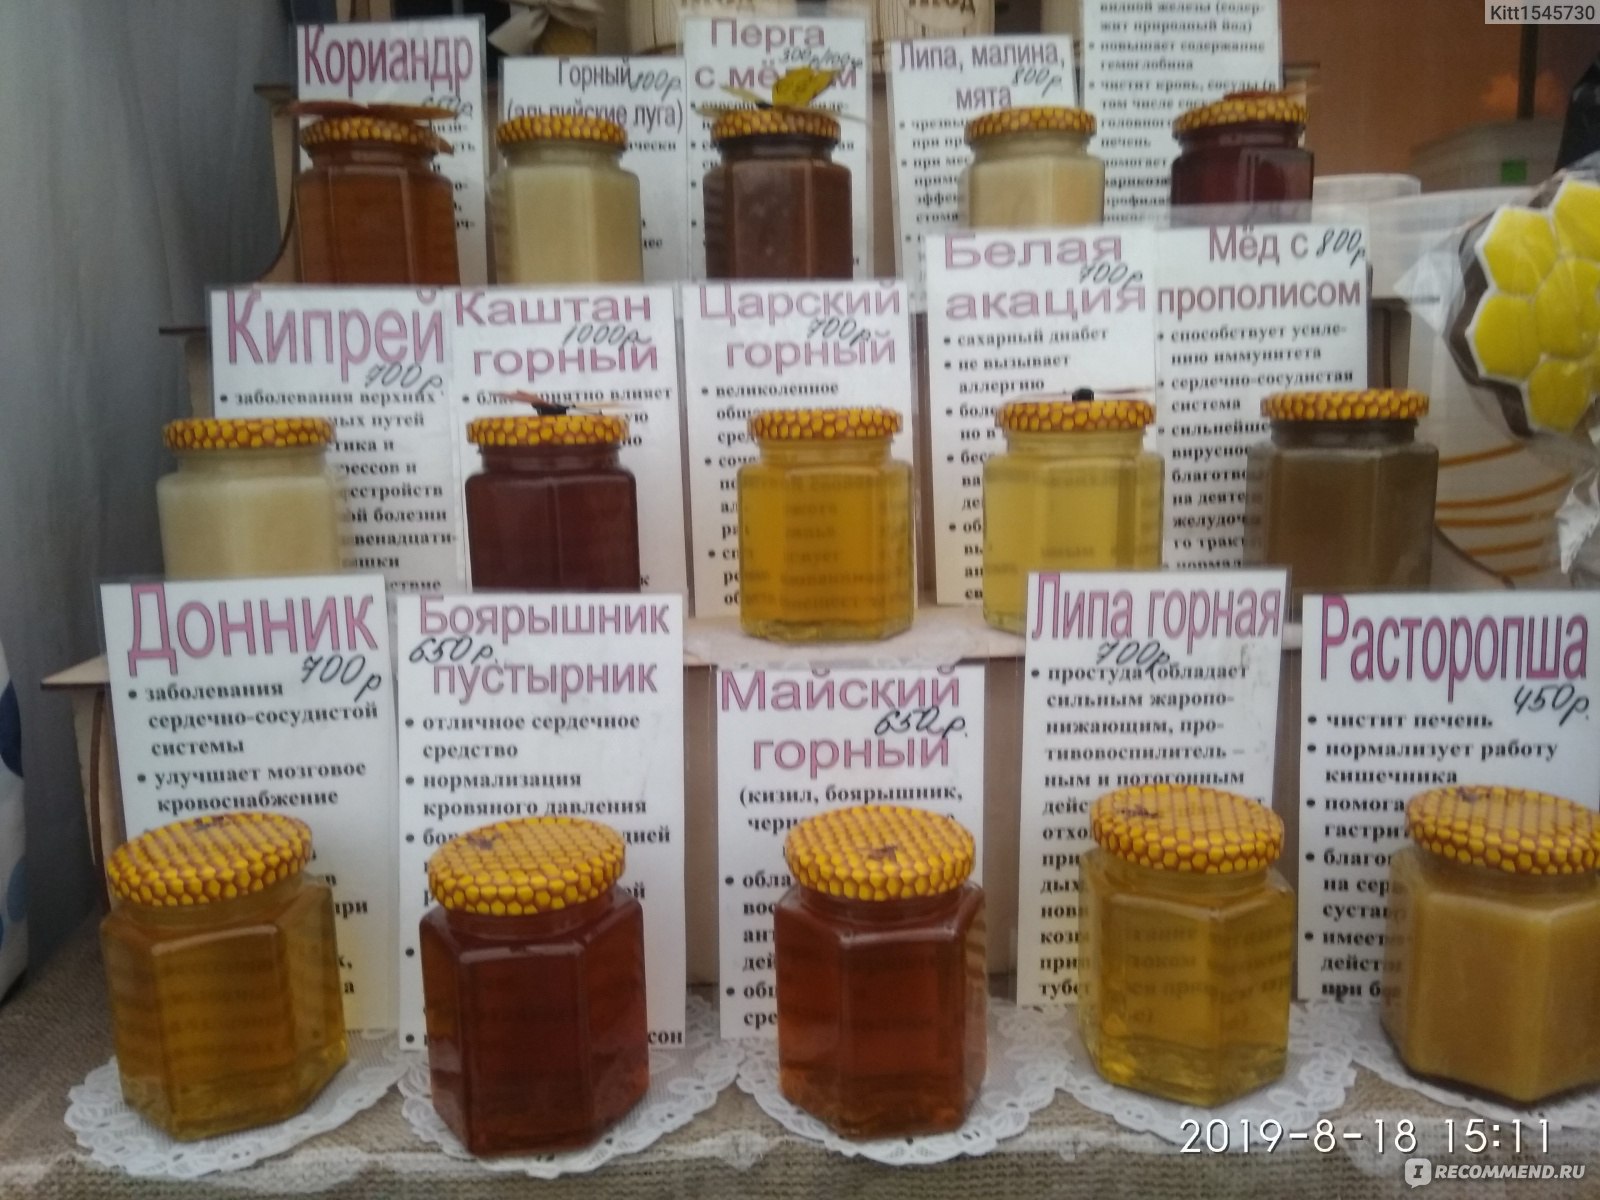 Где Купить Качественный Мед В Новосибирске